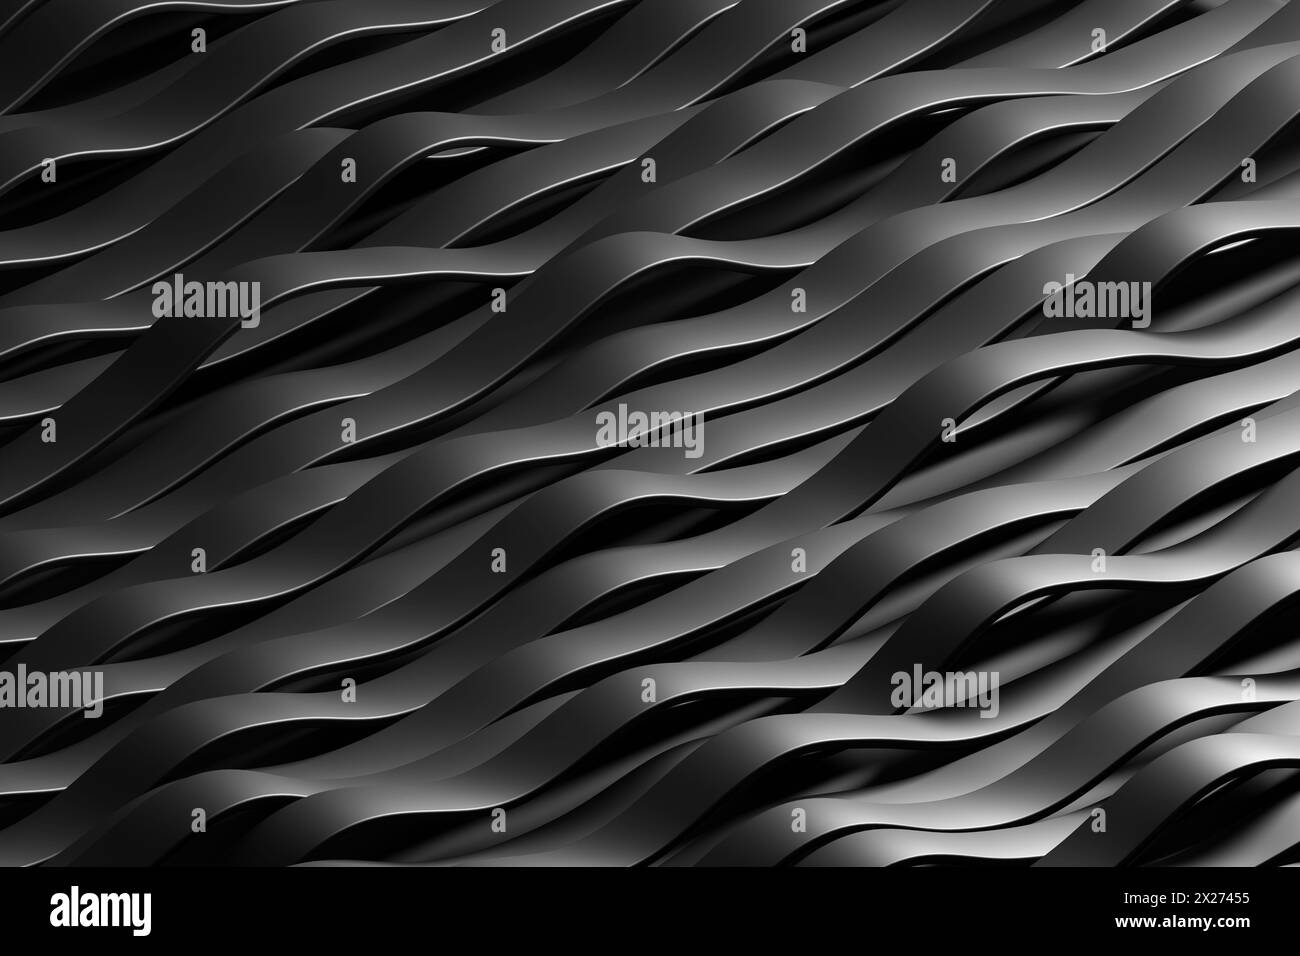 Rangée de bandes noires formant des courbes ressemblant à des vagues. Élément de conception pour les documents imprimables, les fonds de page Web et les fonds d'écran de présentation de diaporama Banque D'Images